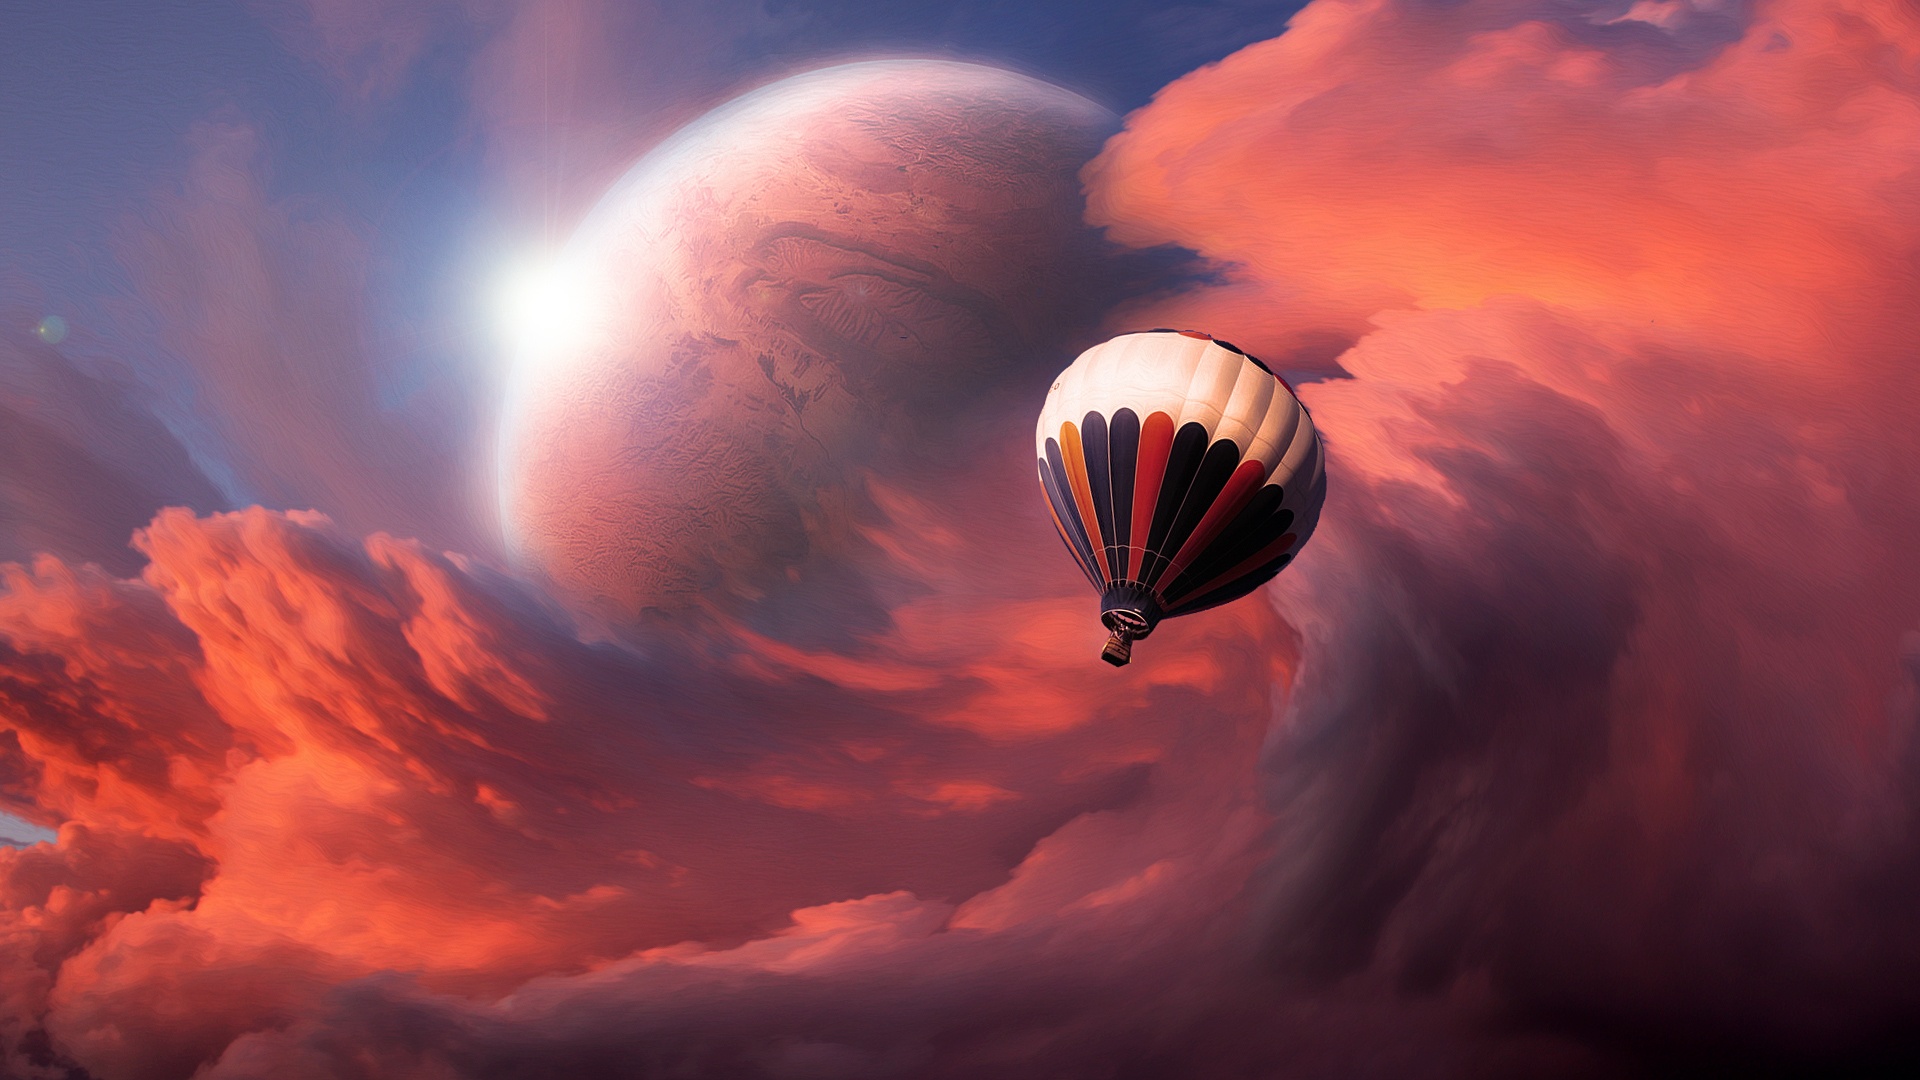 General 1920x1080 hot air balloons clouds sky sunlight planet digital art